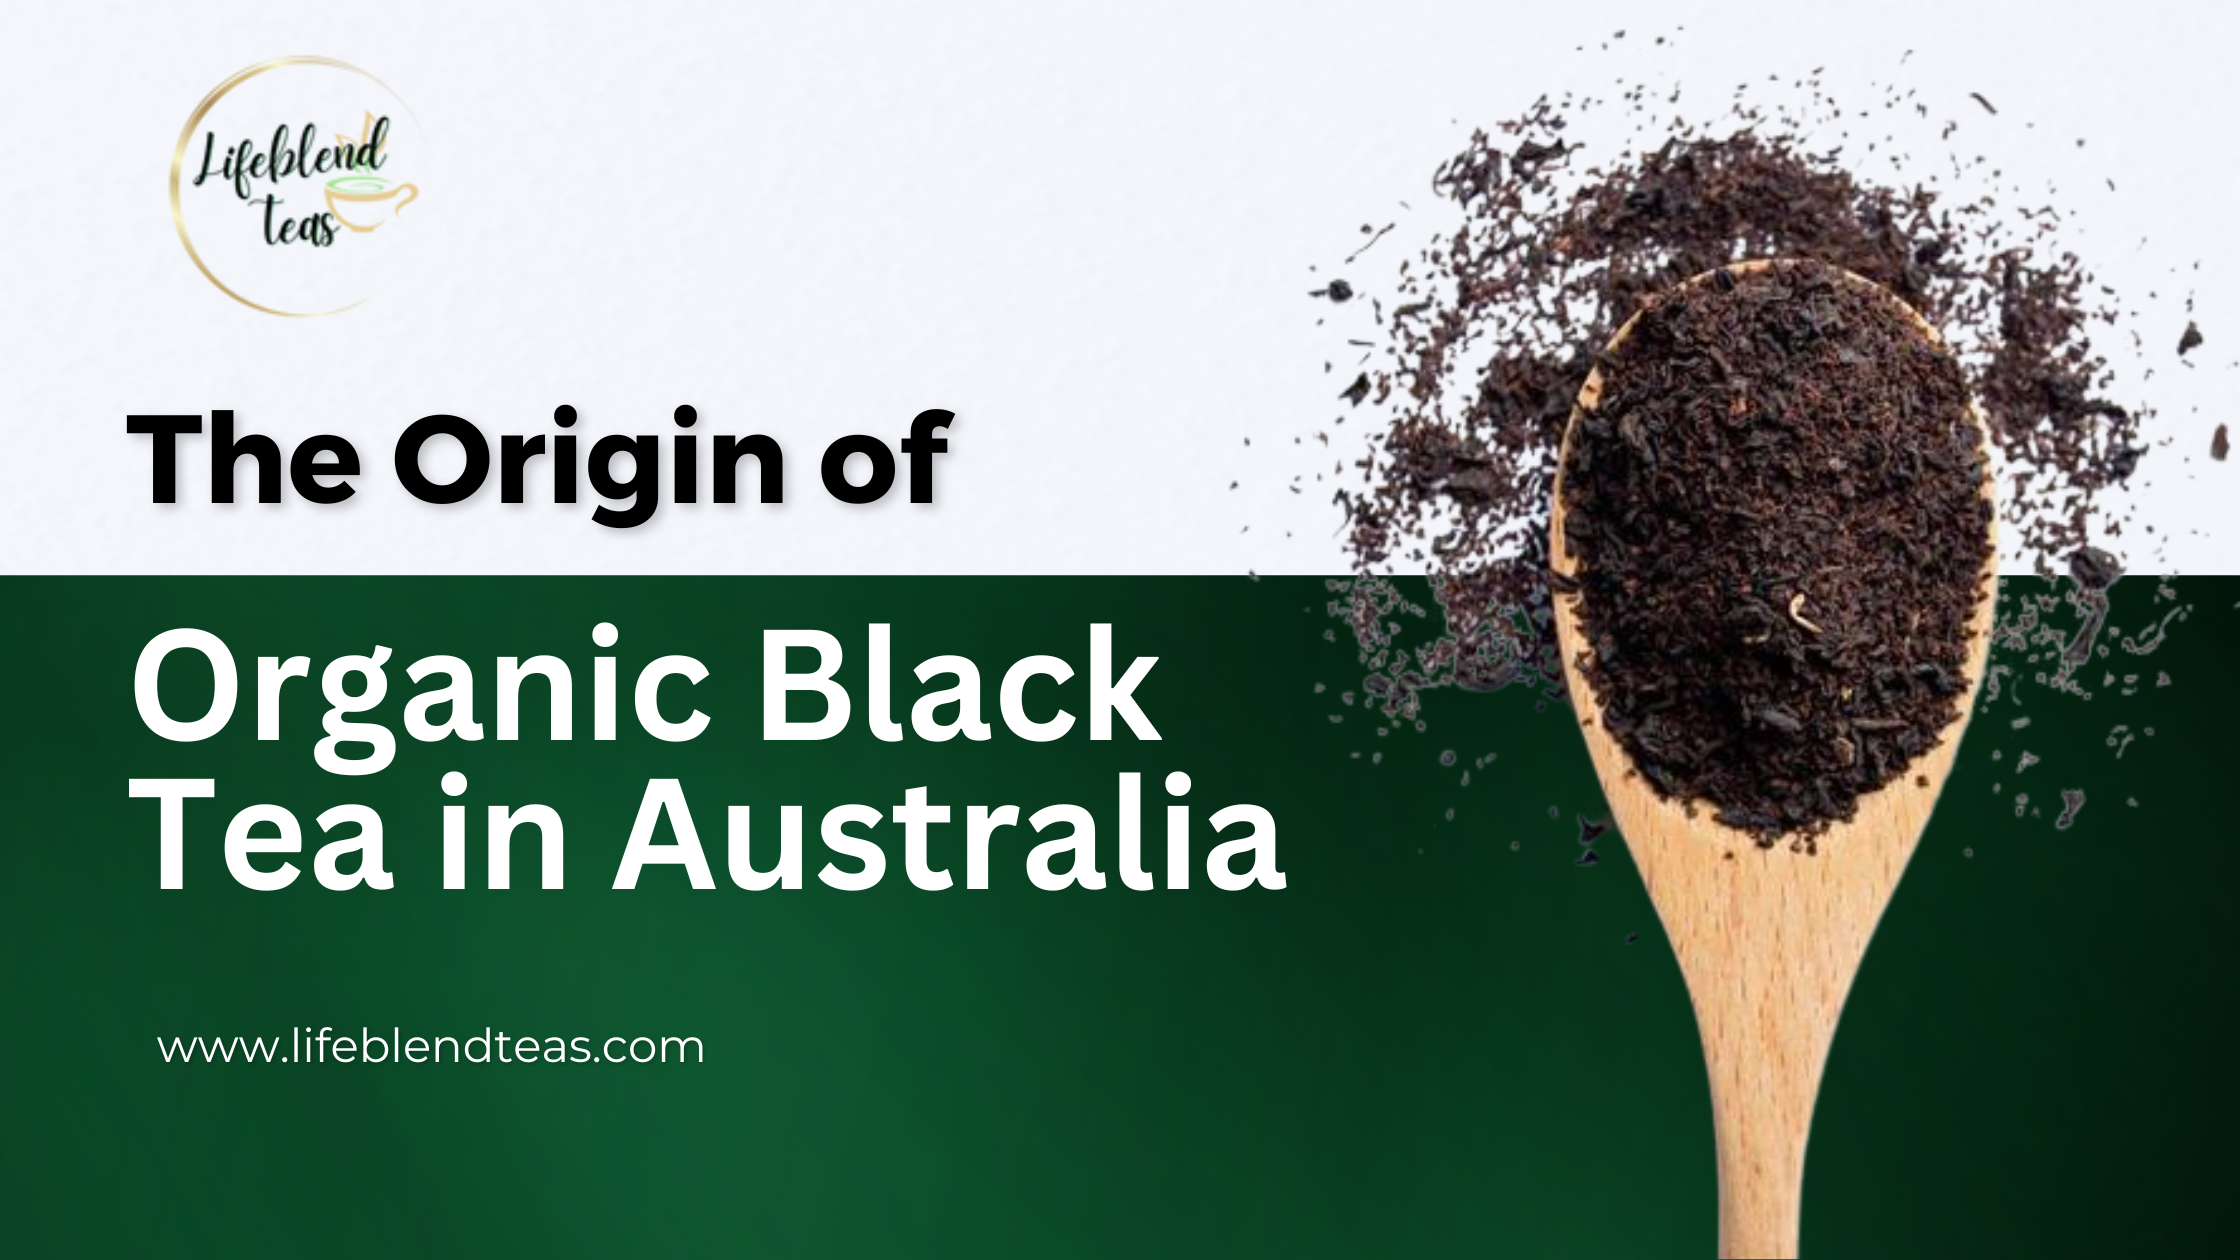 The Origin of Organic Black Tea in Australia